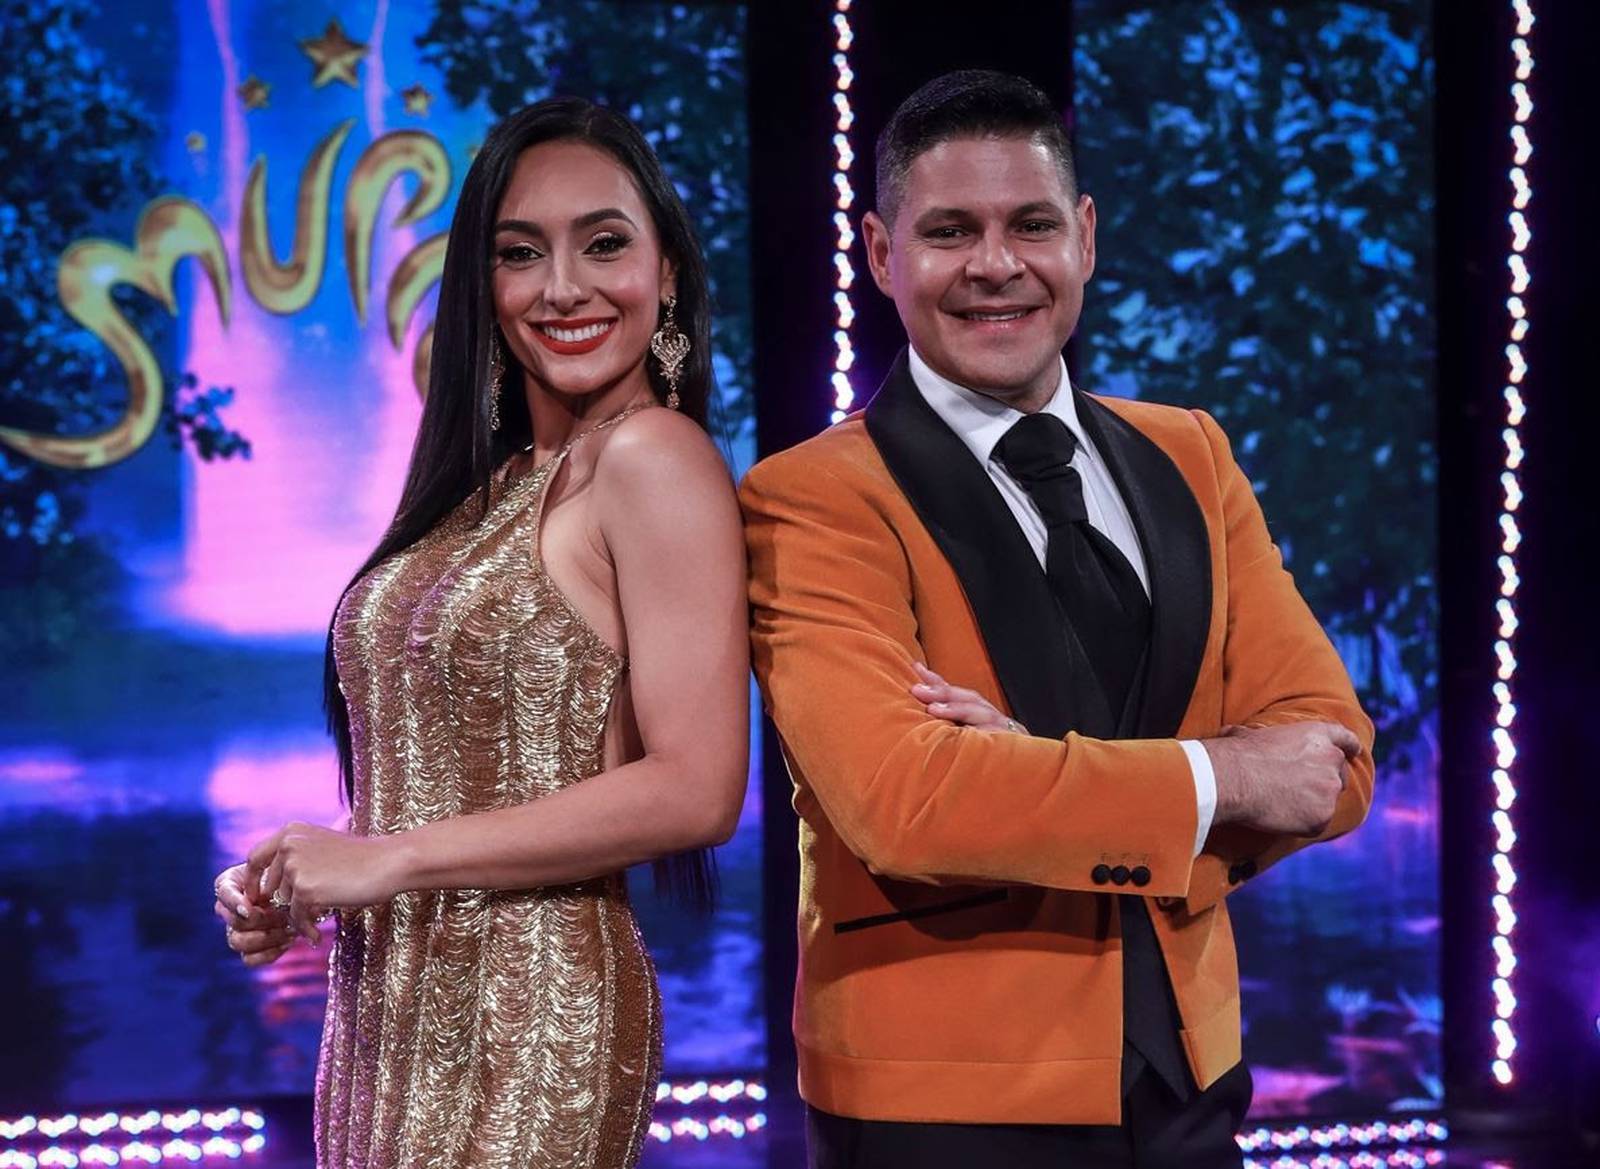 Wapa transmitirá este domingo la preliminar de Miss Universe Puerto